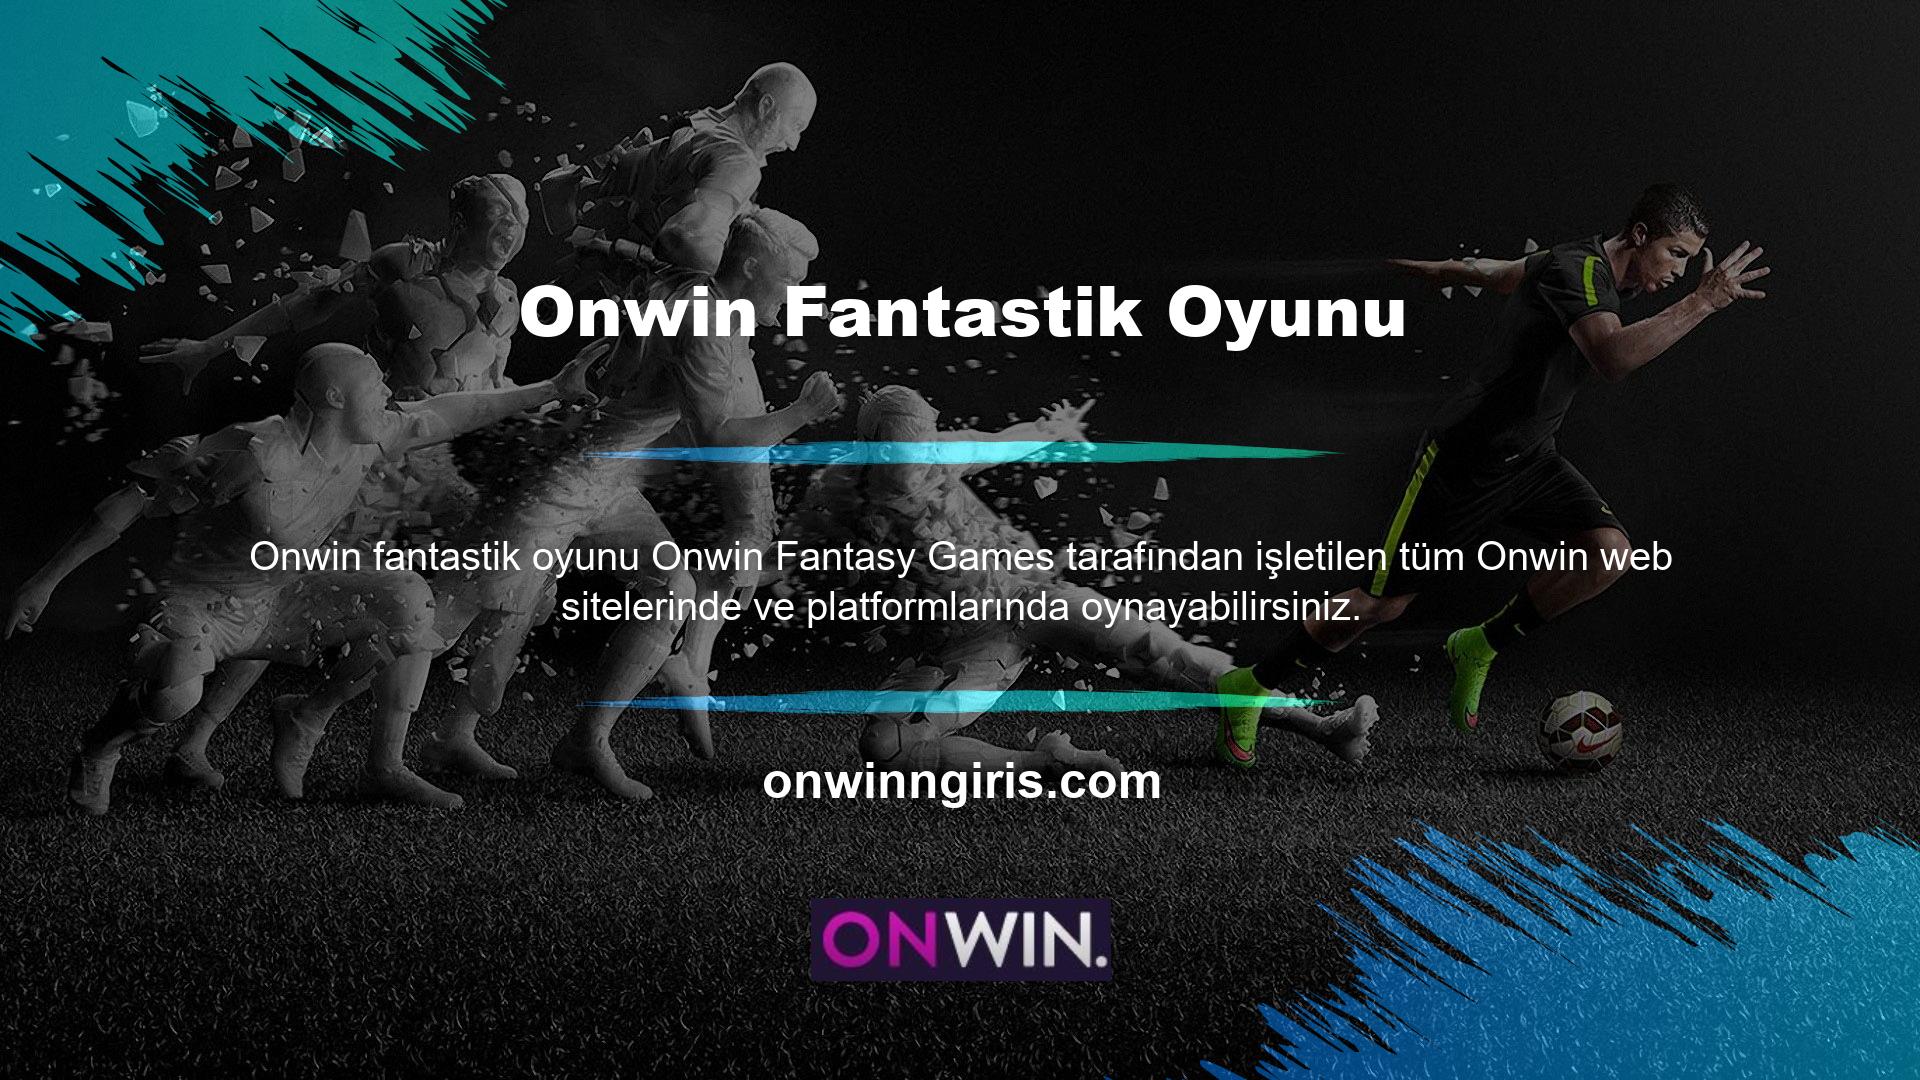 Bu platform aracılığıyla Onwin fantastik oyunları gibi çalışan yüzlerce Onwin web sitesi bulunmaktadır